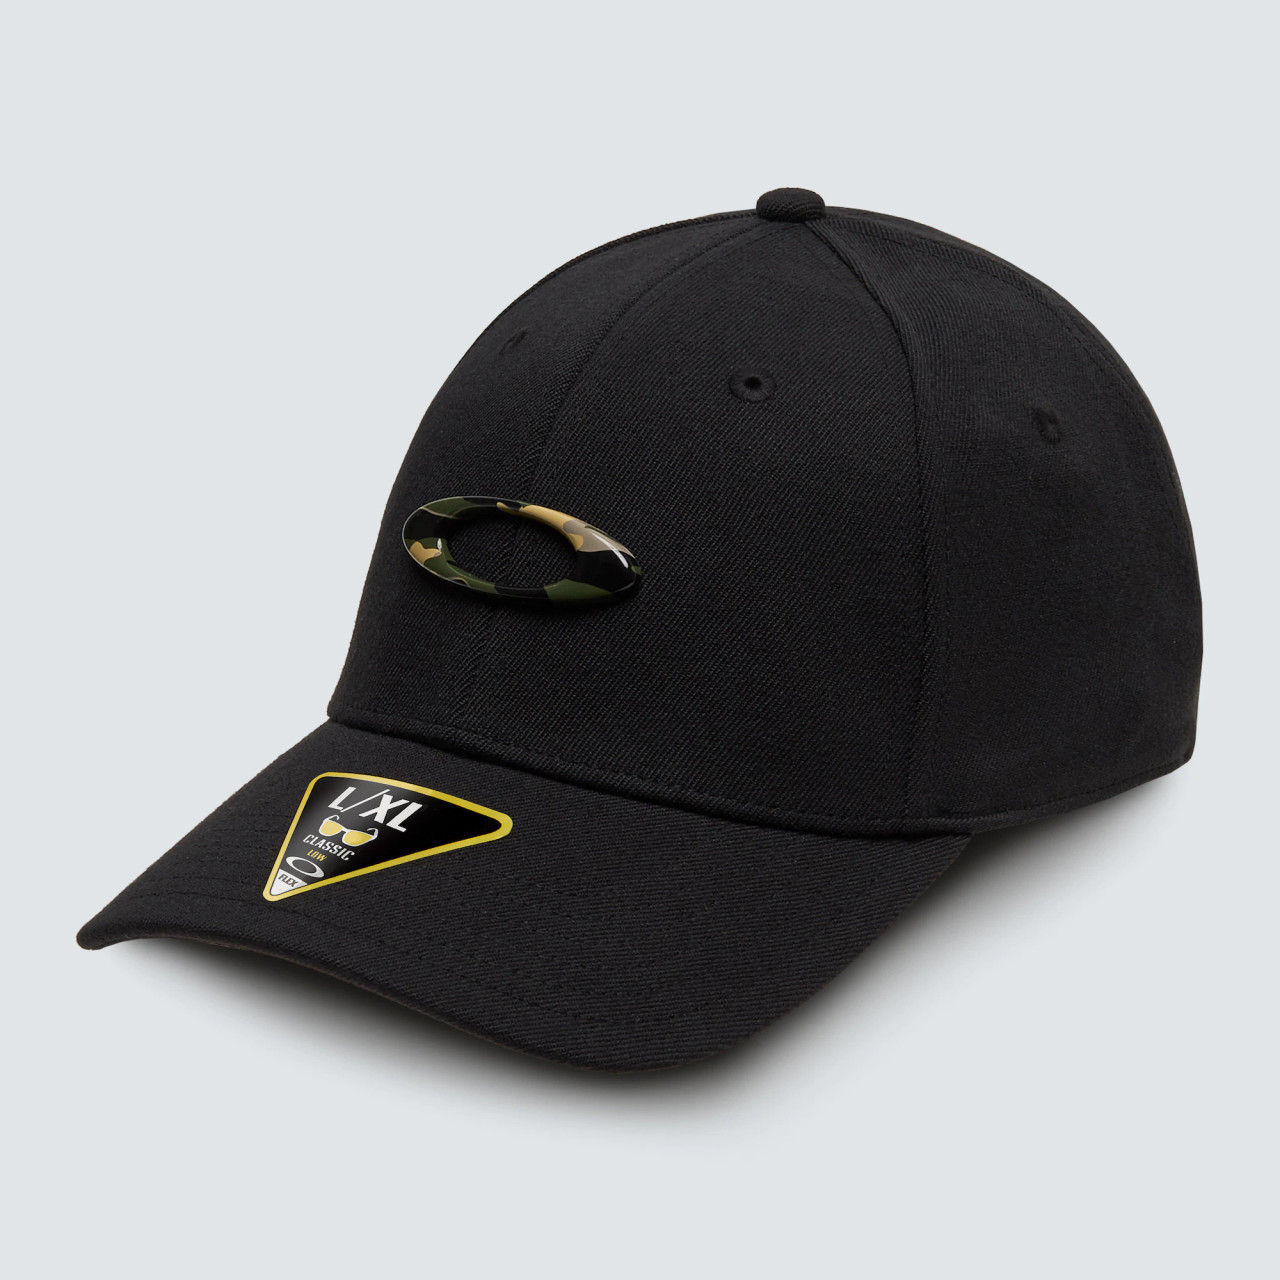 Oakley Men's Flexfit Black/Graphic Camo Tincan Cap Patch Hats - 911545-01Y